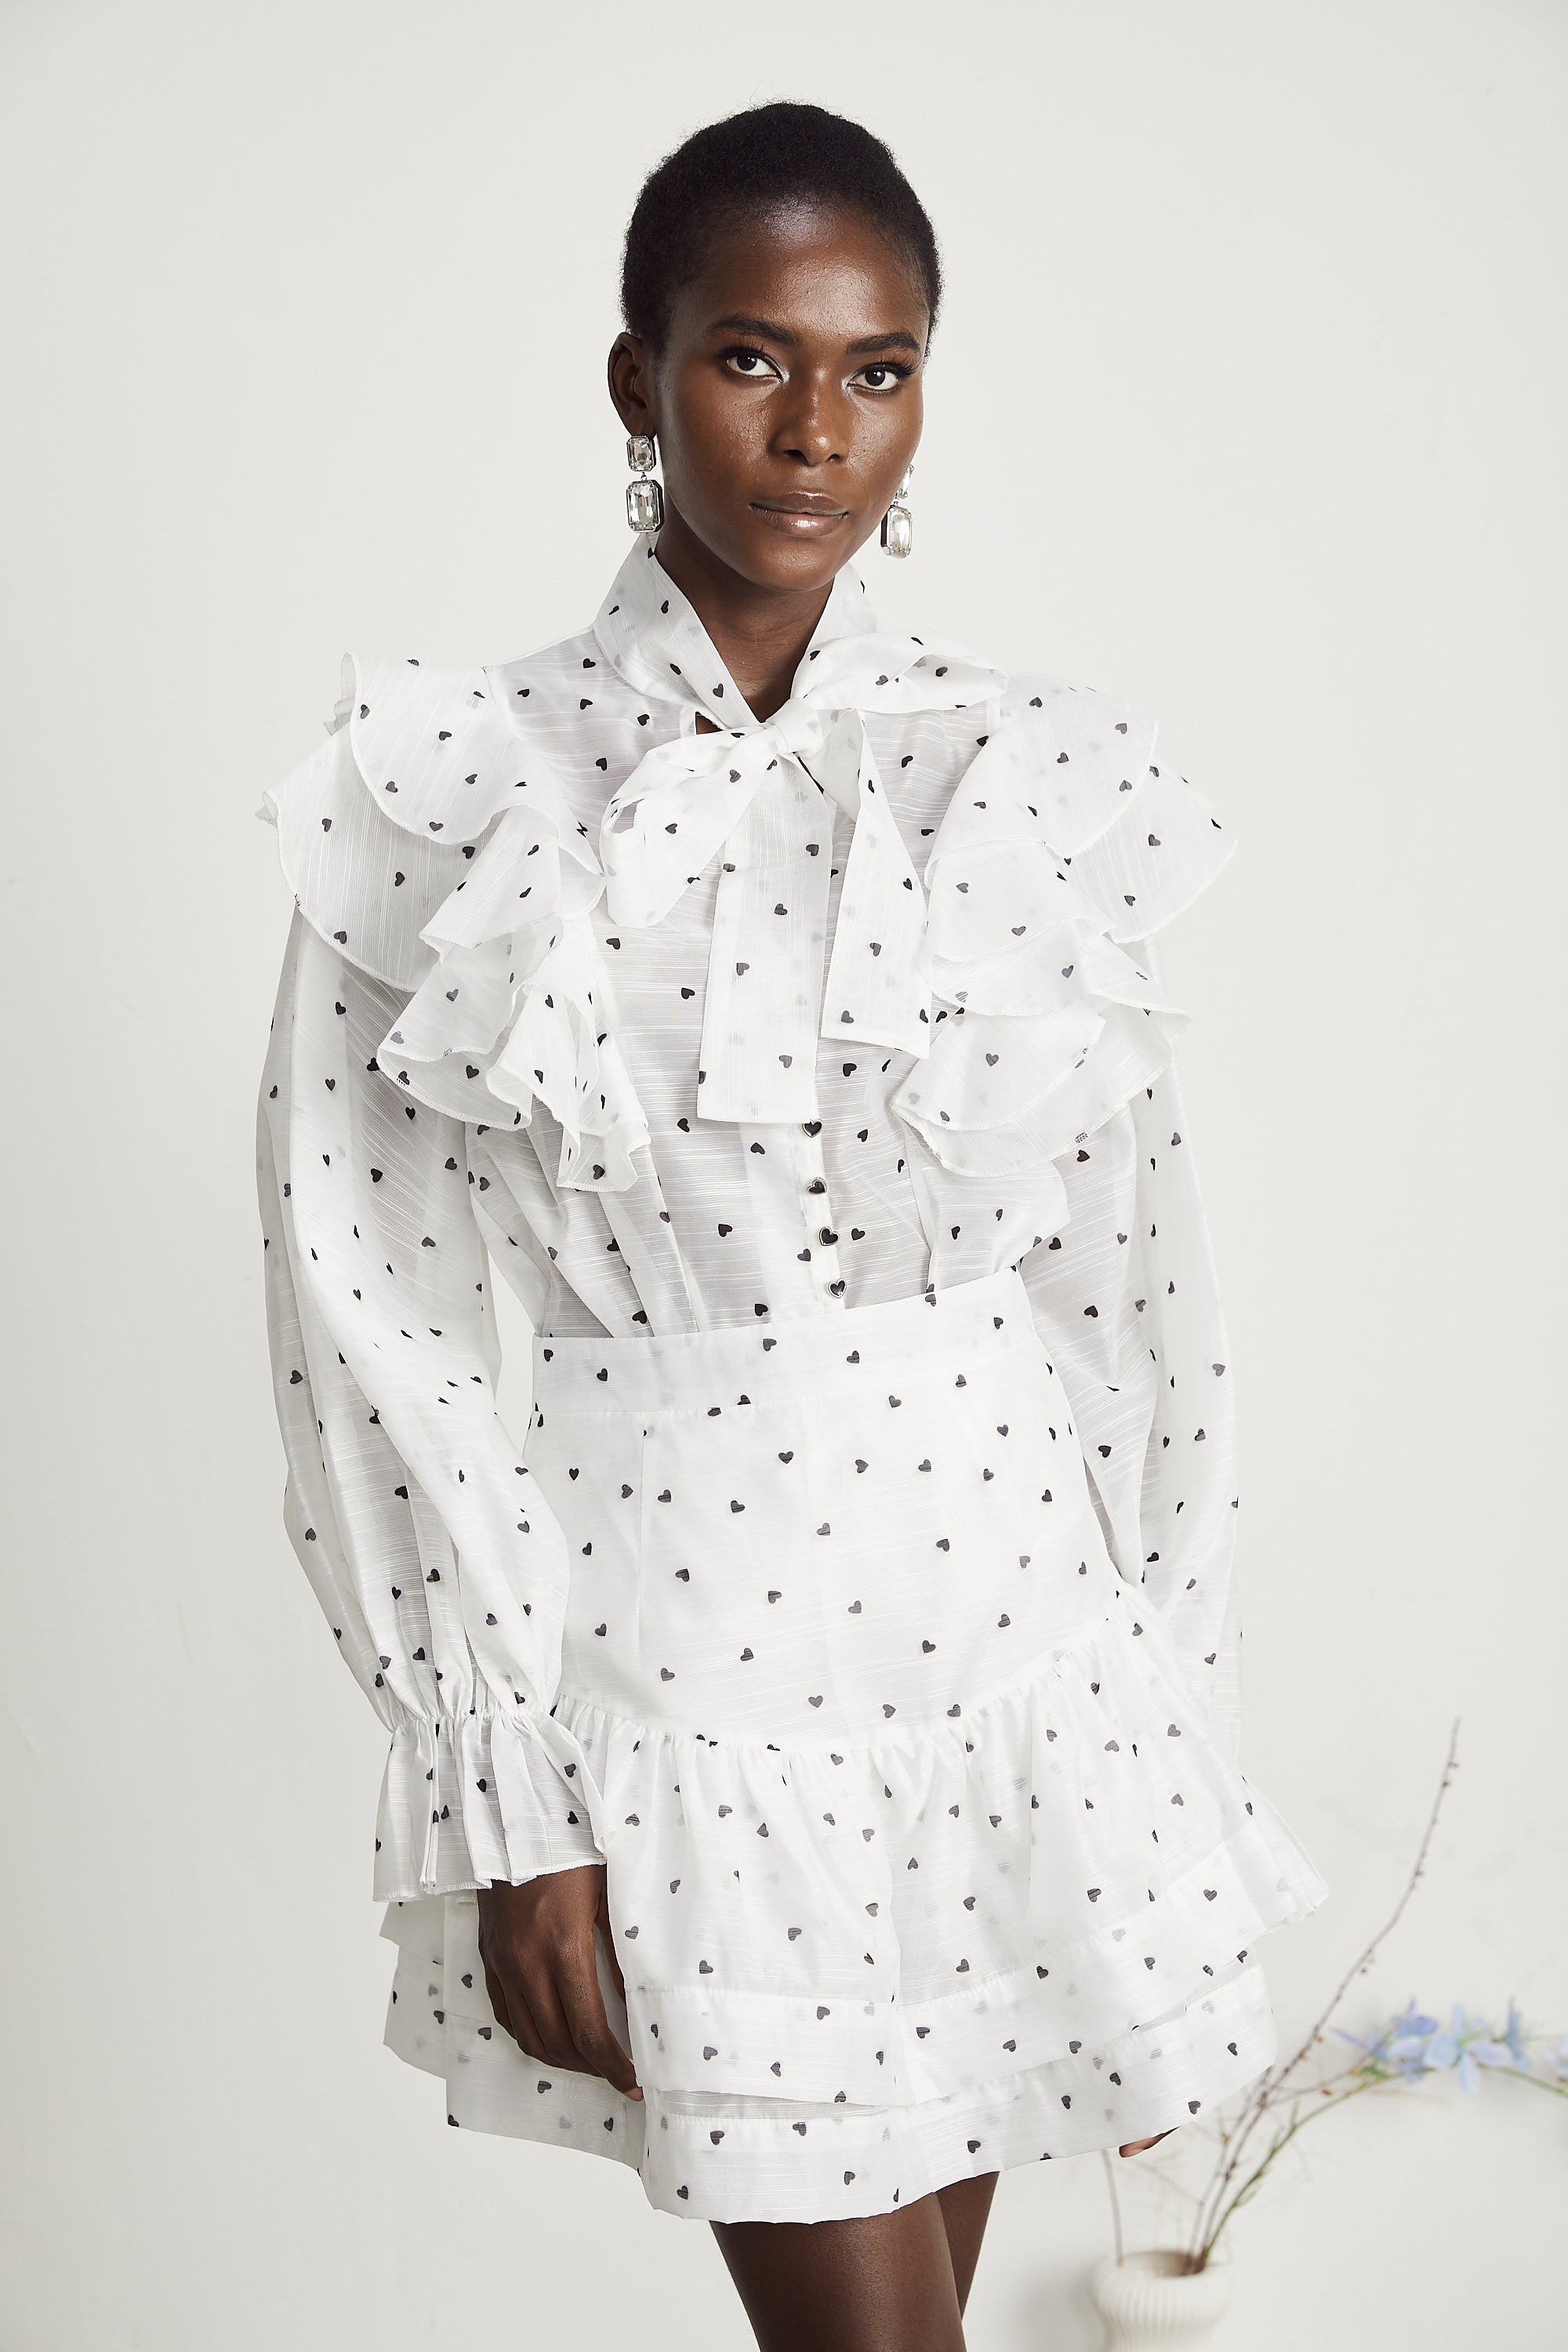 Nadia heart-print blouse & skirt matching set in White